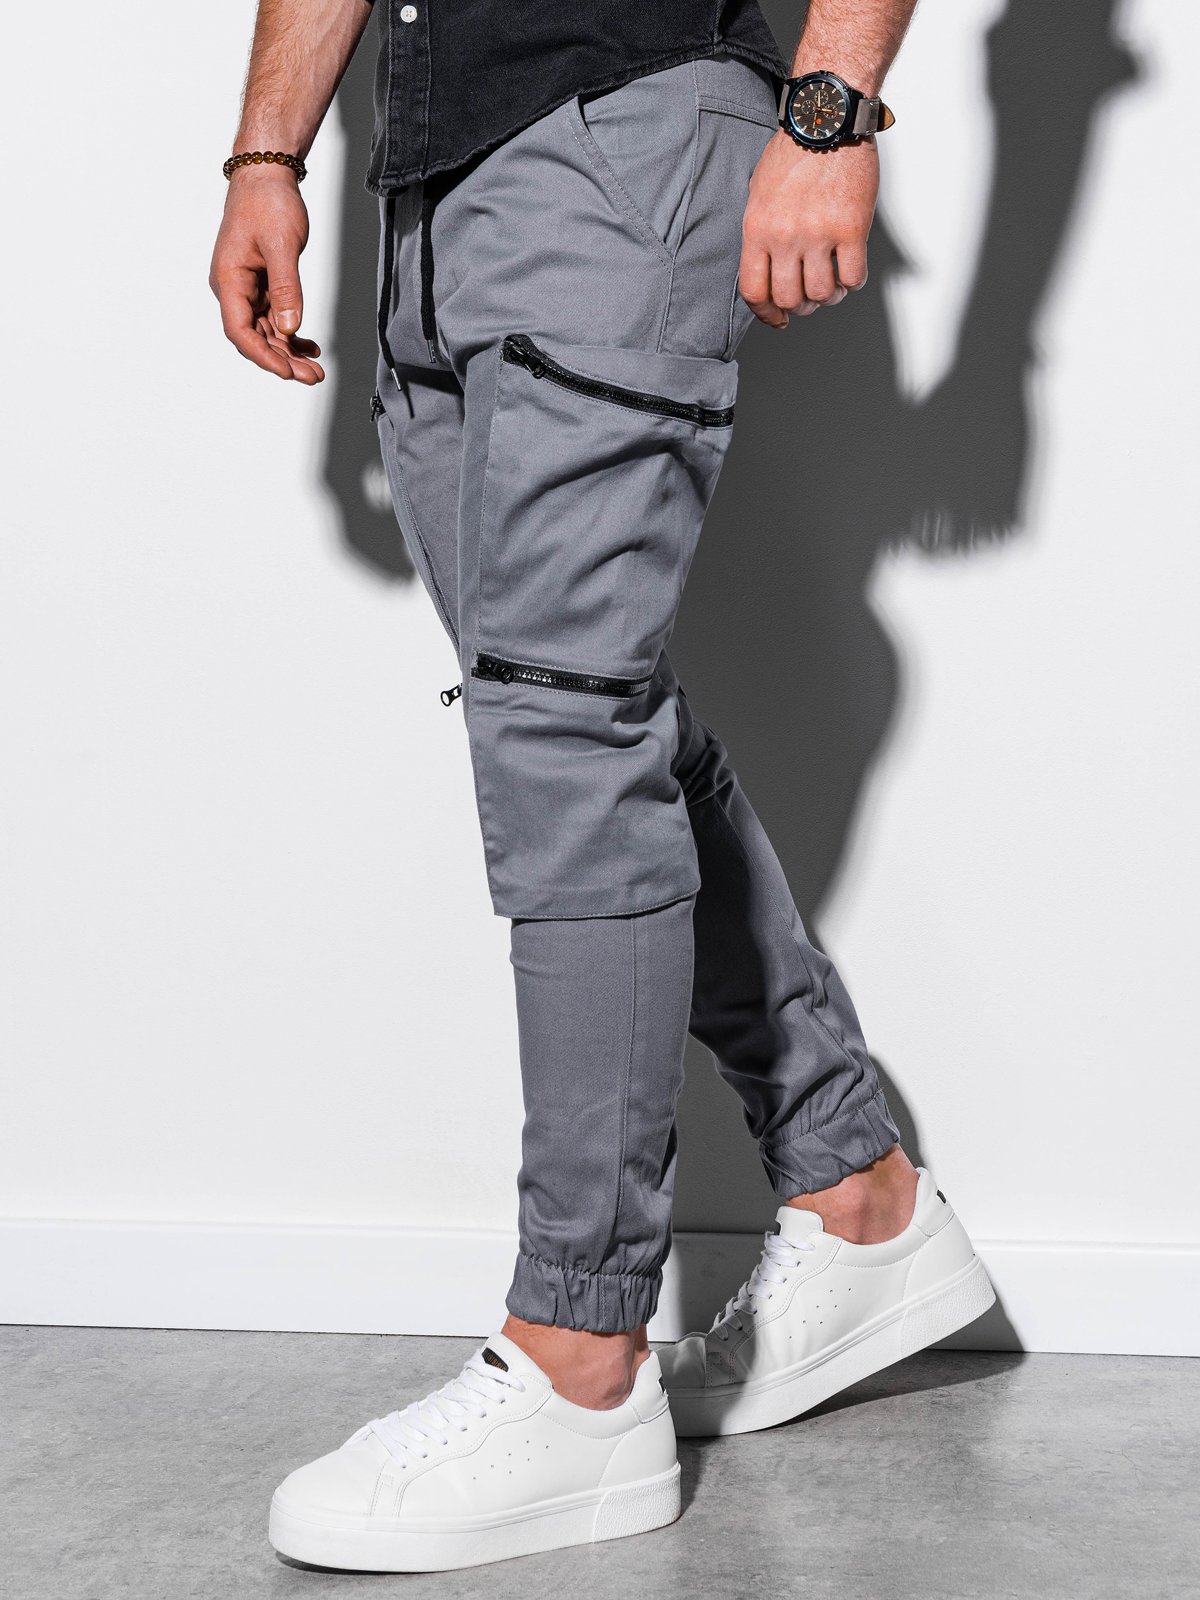 Men's pants joggers P706 - grey | MODONE wholesale - Clothing For Men